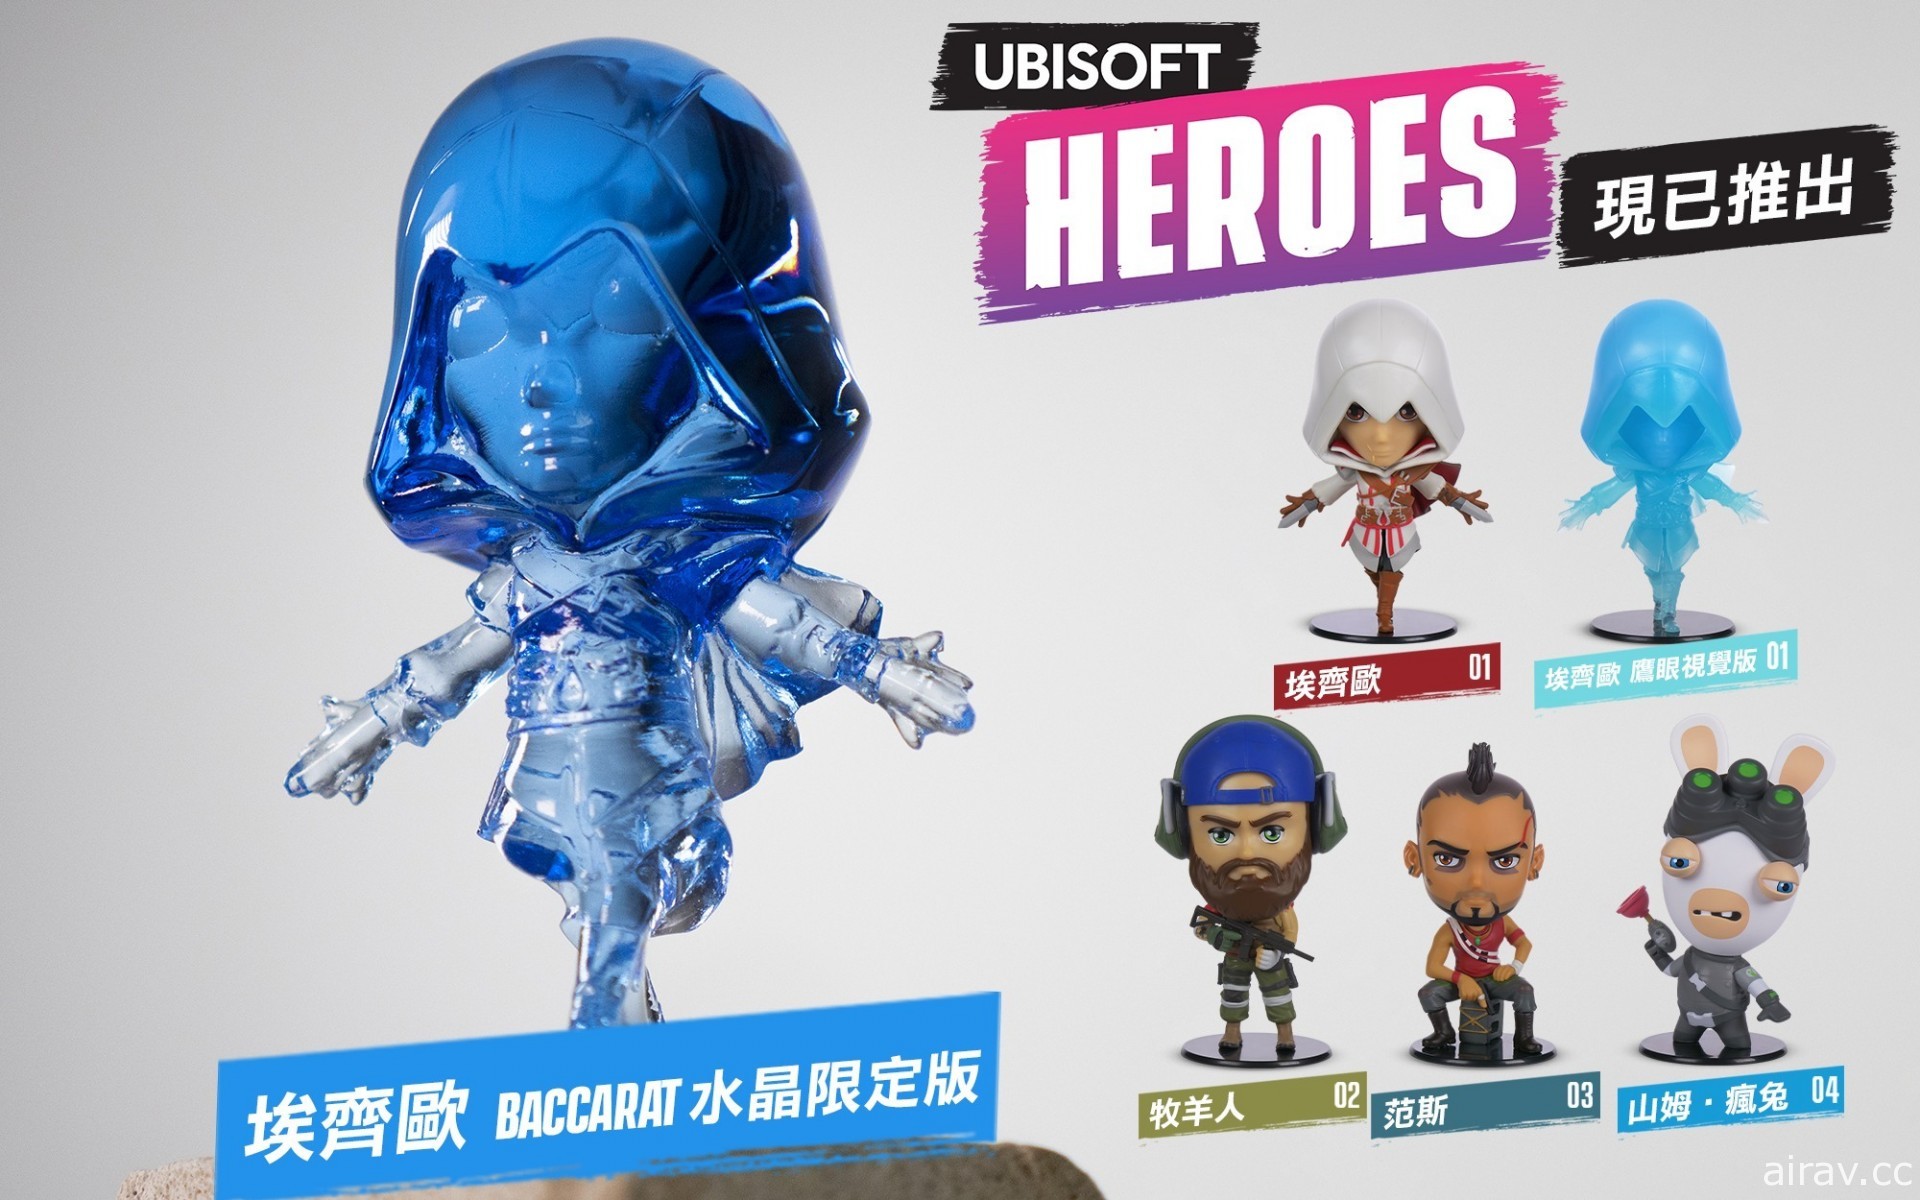 UBISOFT 英雄公仔 Q 版系列第二彈將於 10 月 27 日推出